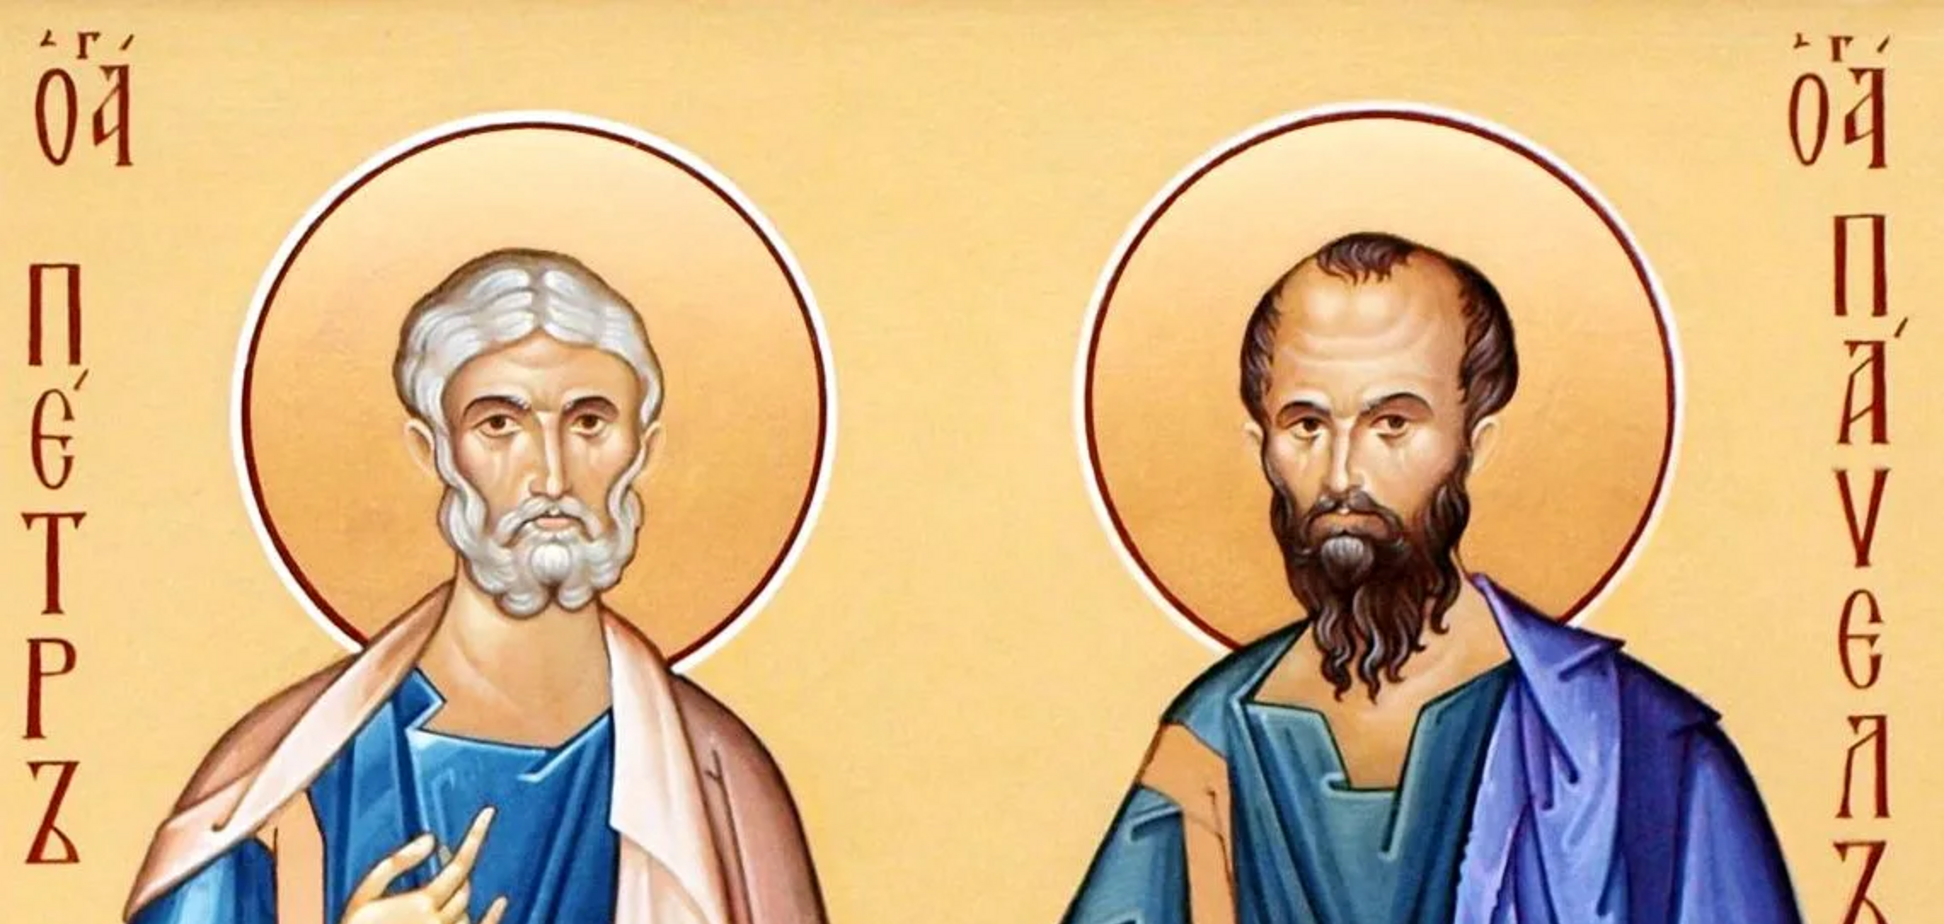 Апостолы Петр и Павел были ближайшими учениками Иисуса Христа